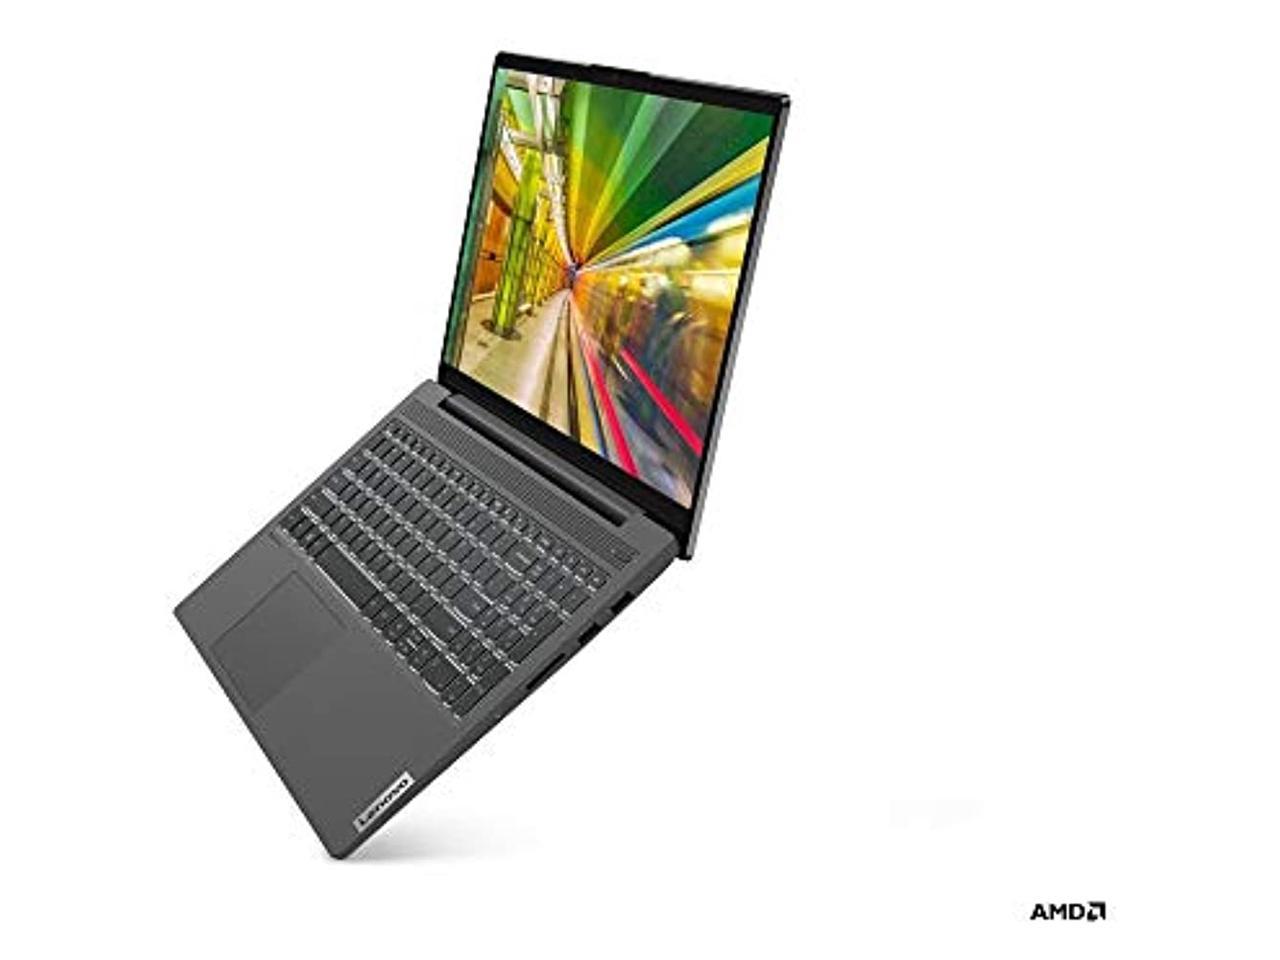 Lenovo Ideapad 5 15.6" Laptop Ryzen 7-4700U 16Gb Ram 512Gb Ssd Graphite Grey - Amd Ryzen 7-4700U